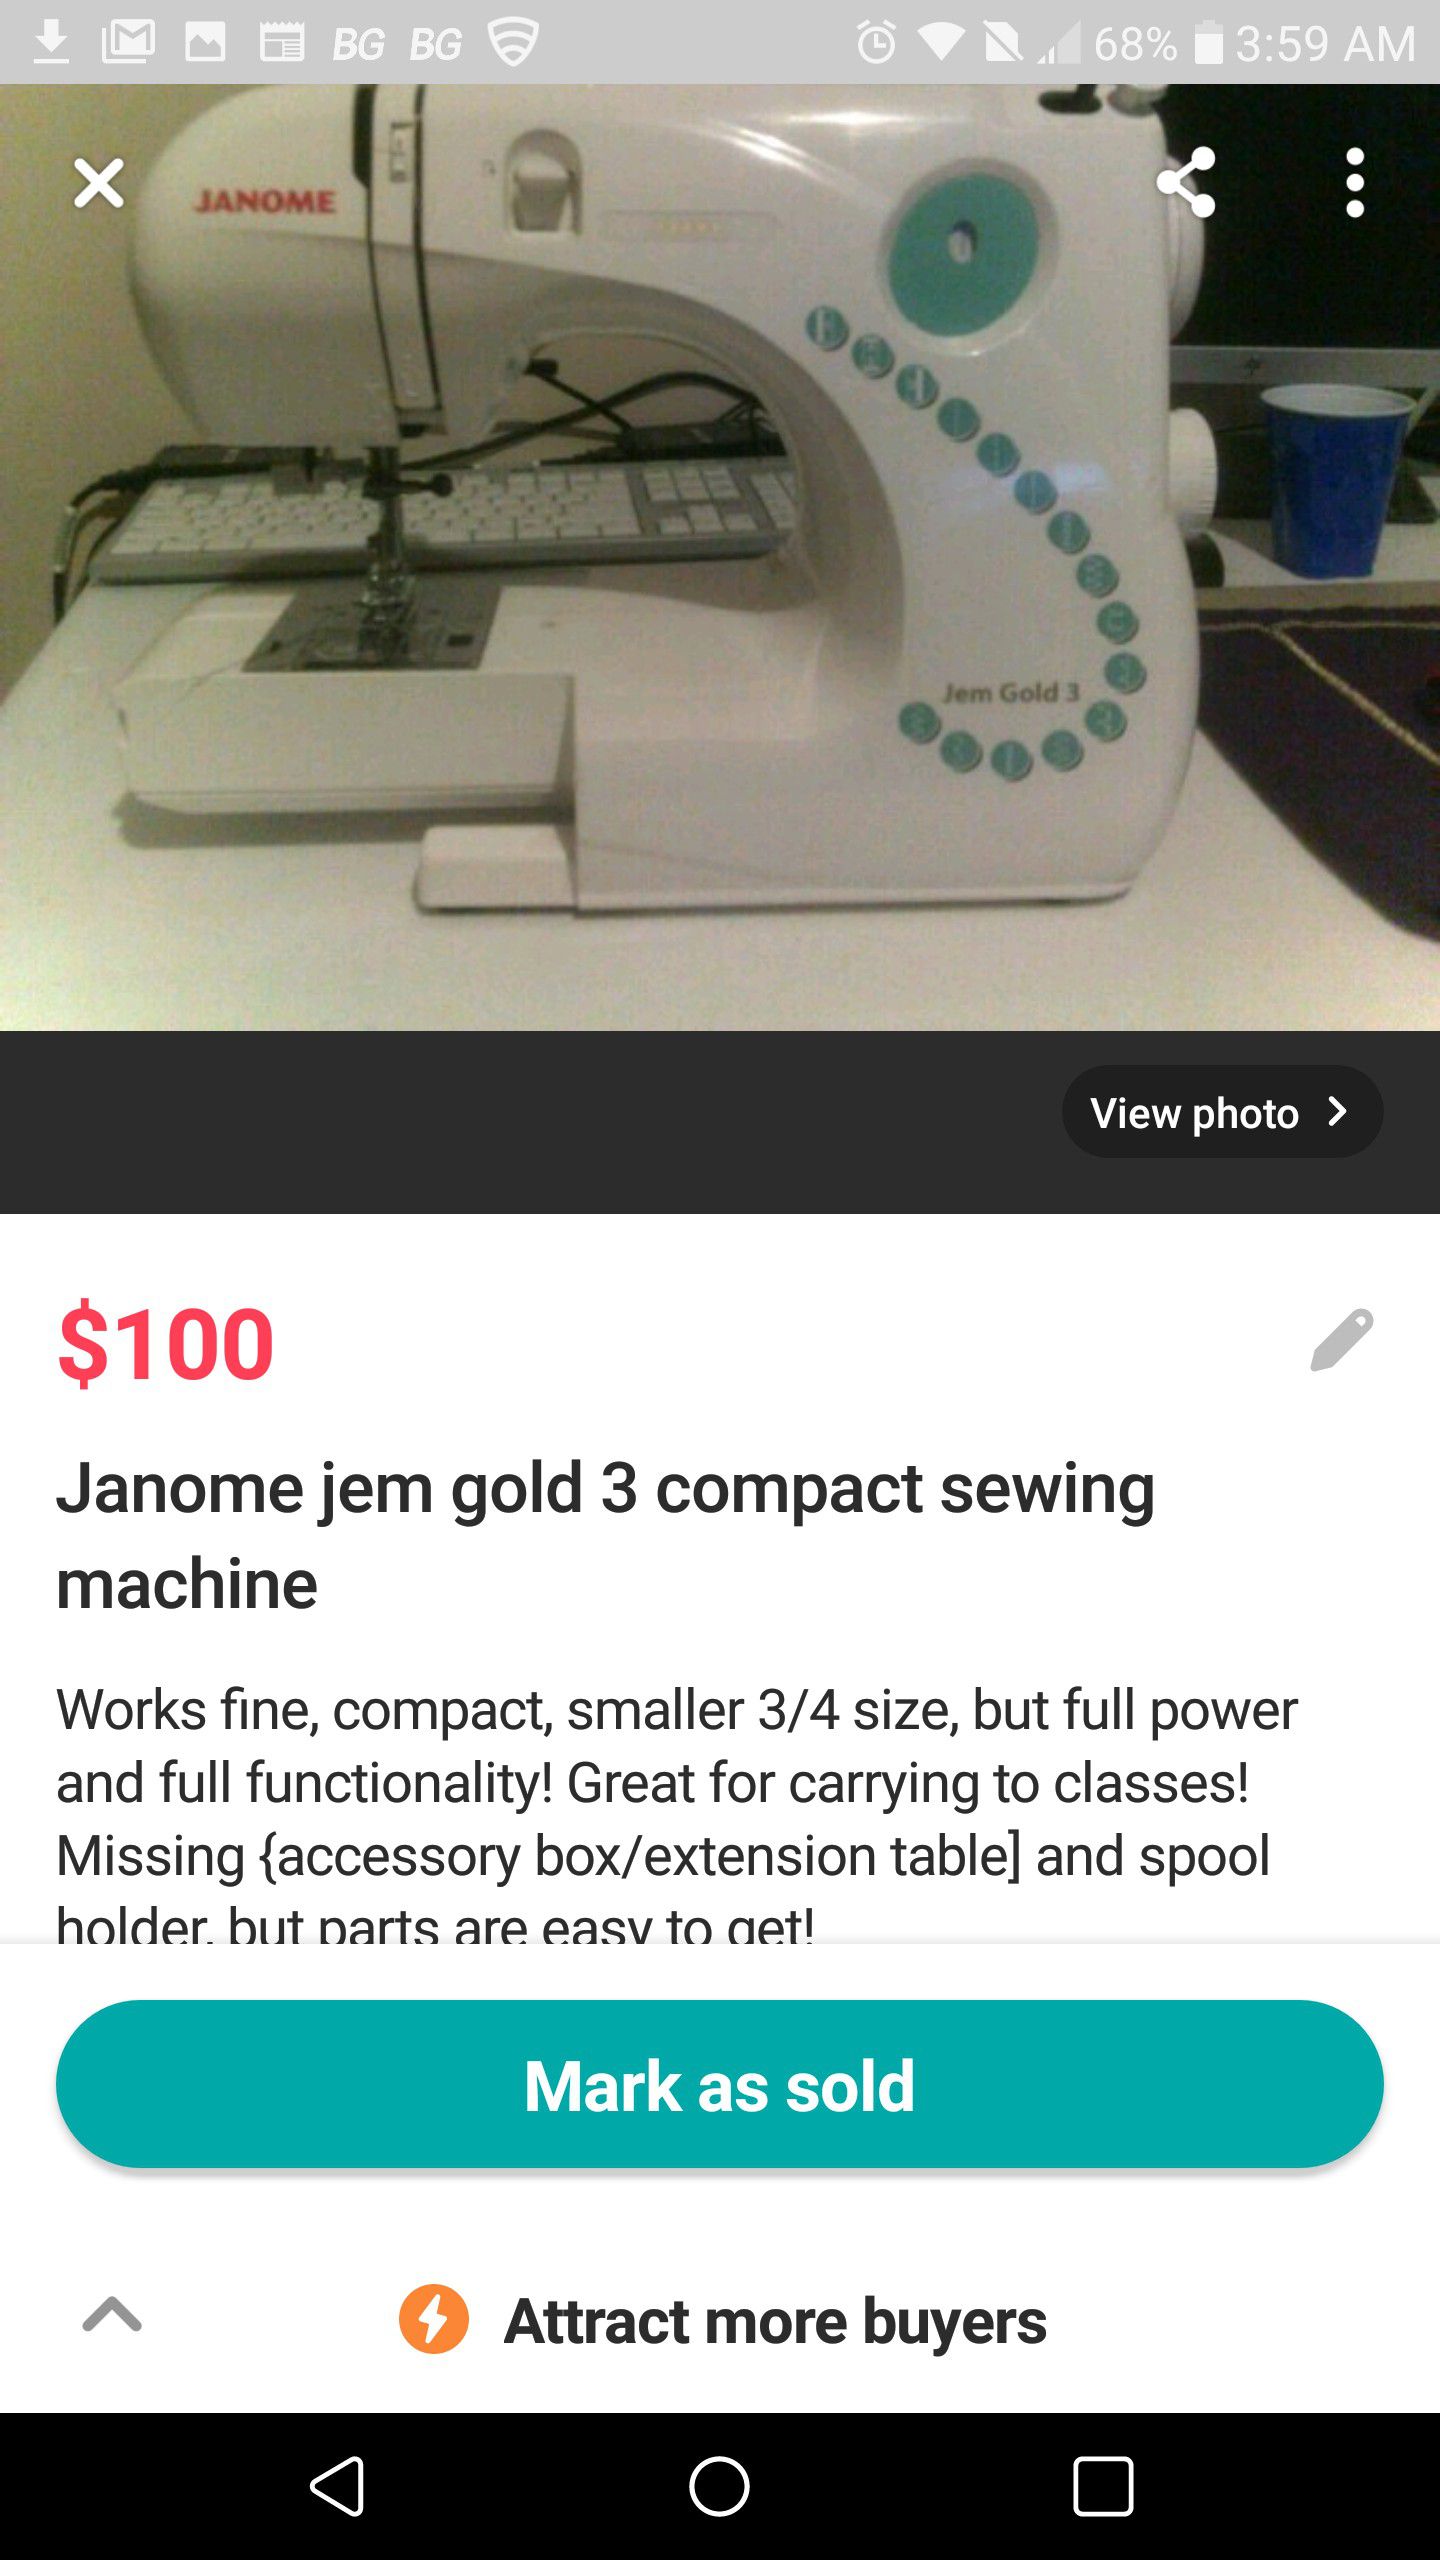 Janome jem gold 3 sewing machine